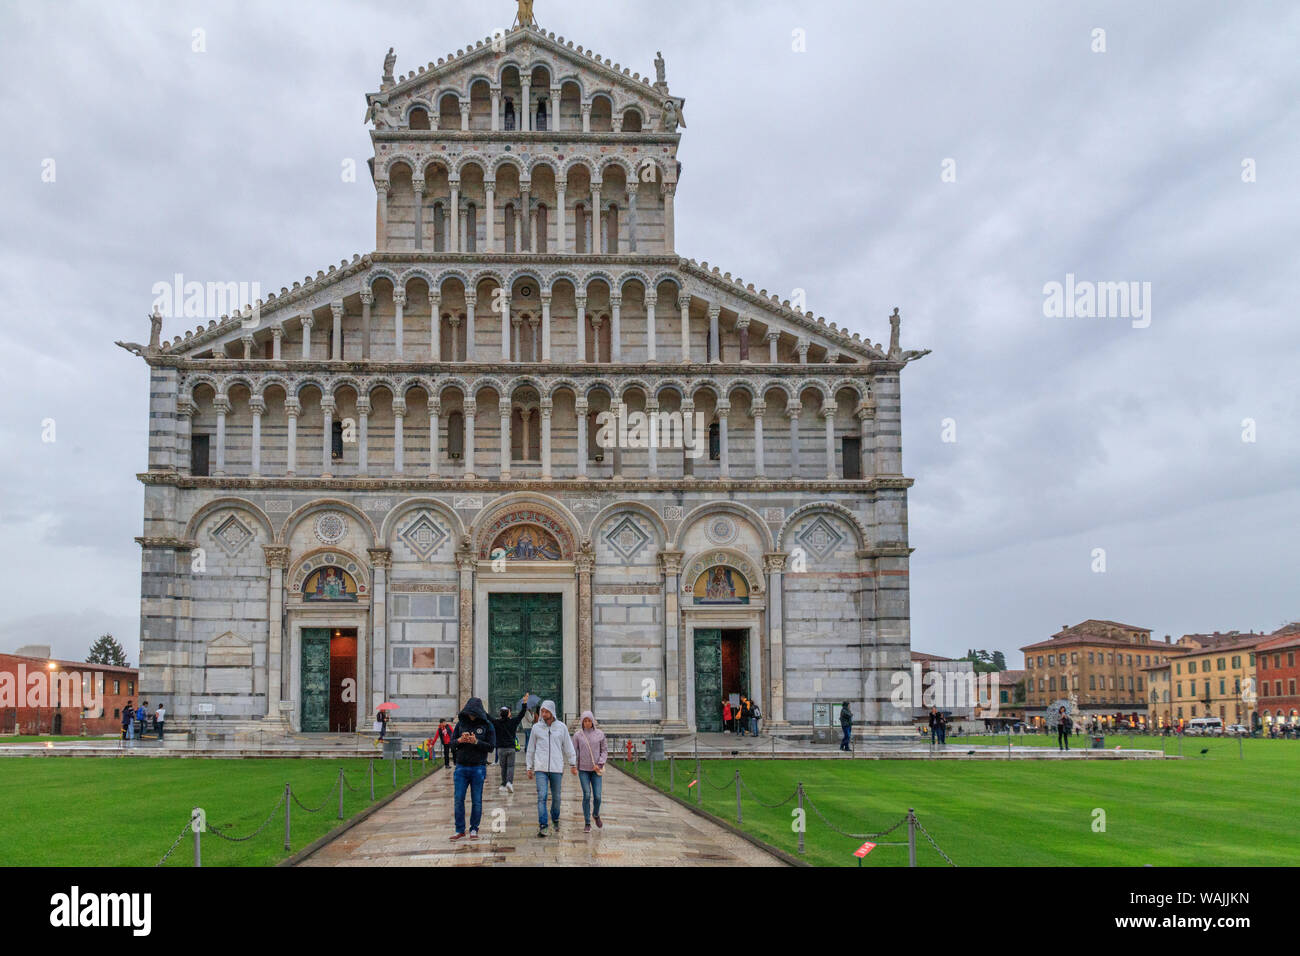 Italia, la Catedral de Pisa, el Duomo di Pisa. Pisana románico medieval catedral católica dedicada a la asunción de la Virgen María, en la Piazza dei Miracoli. Foto de stock